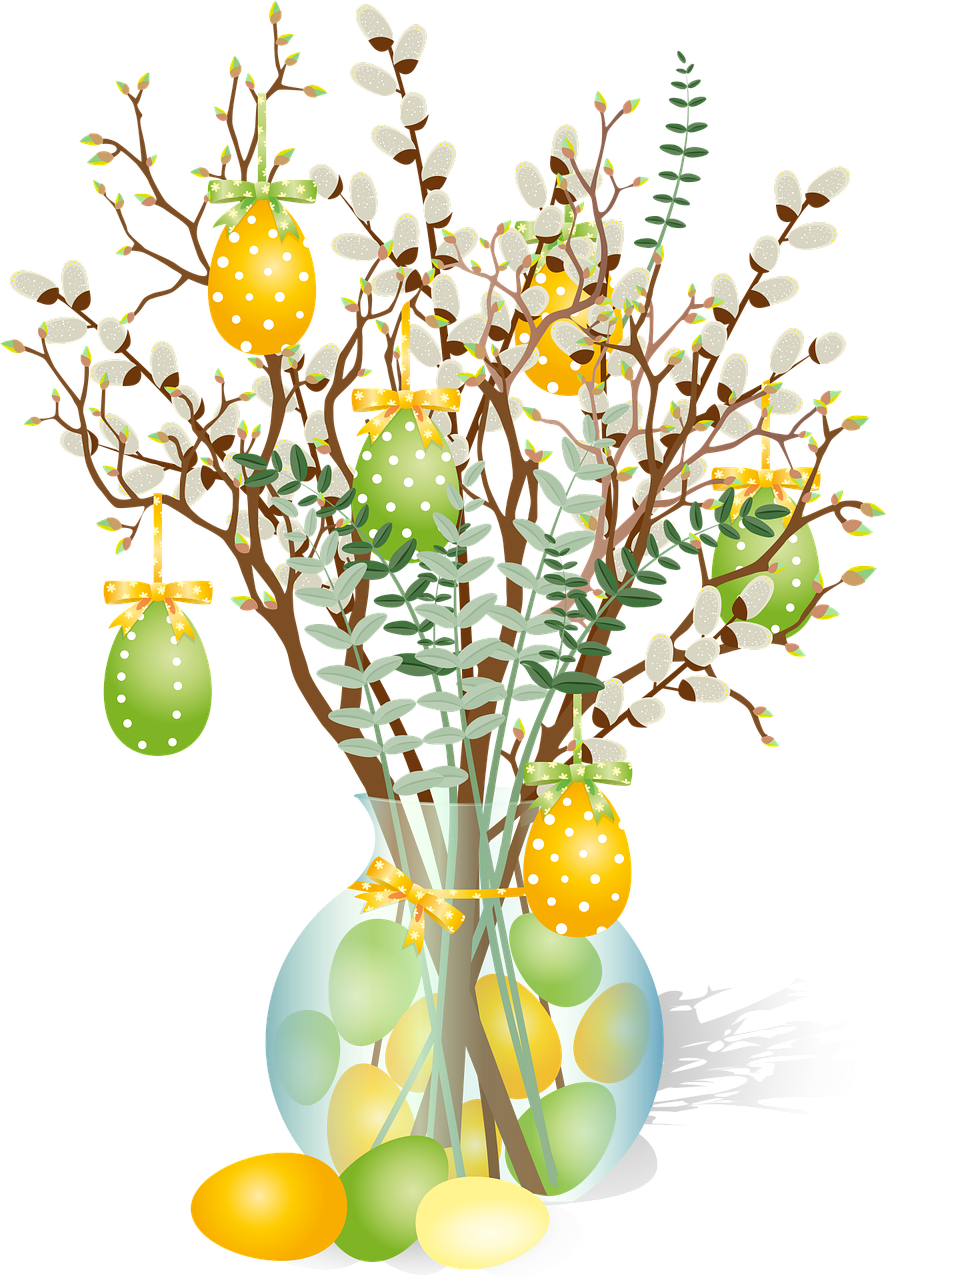 Piirroskuva pääsiäismunin koristelluista pajunkissoista maljakossa.